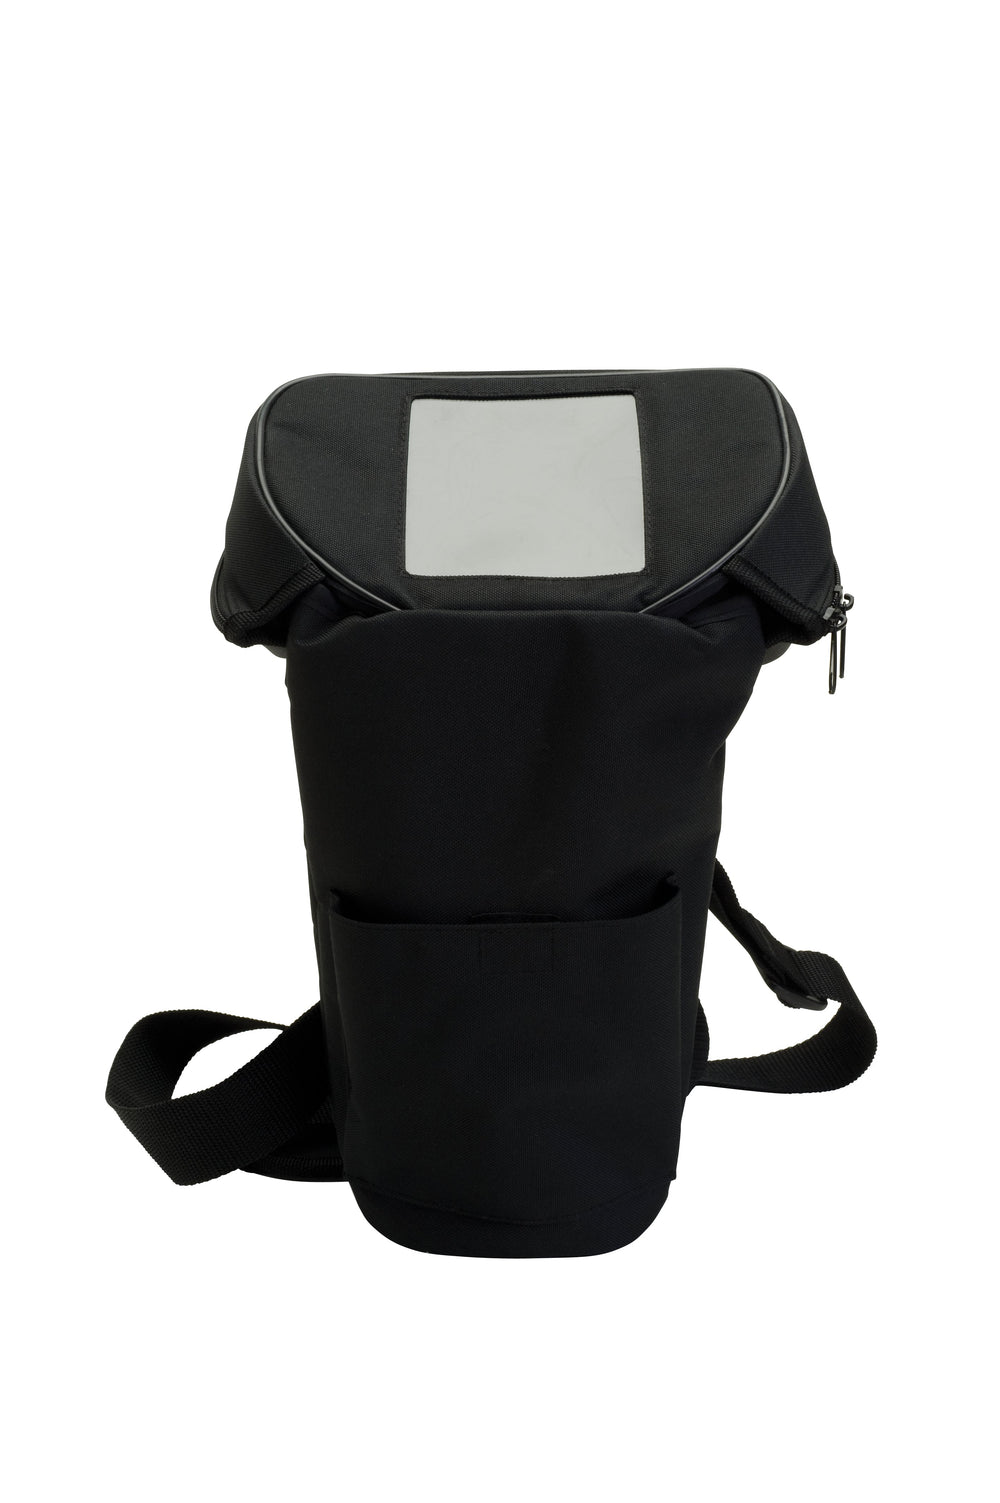 Drive Medical Oxygen Cylinder Carry Bag, Vertical Horizontal or Backpack